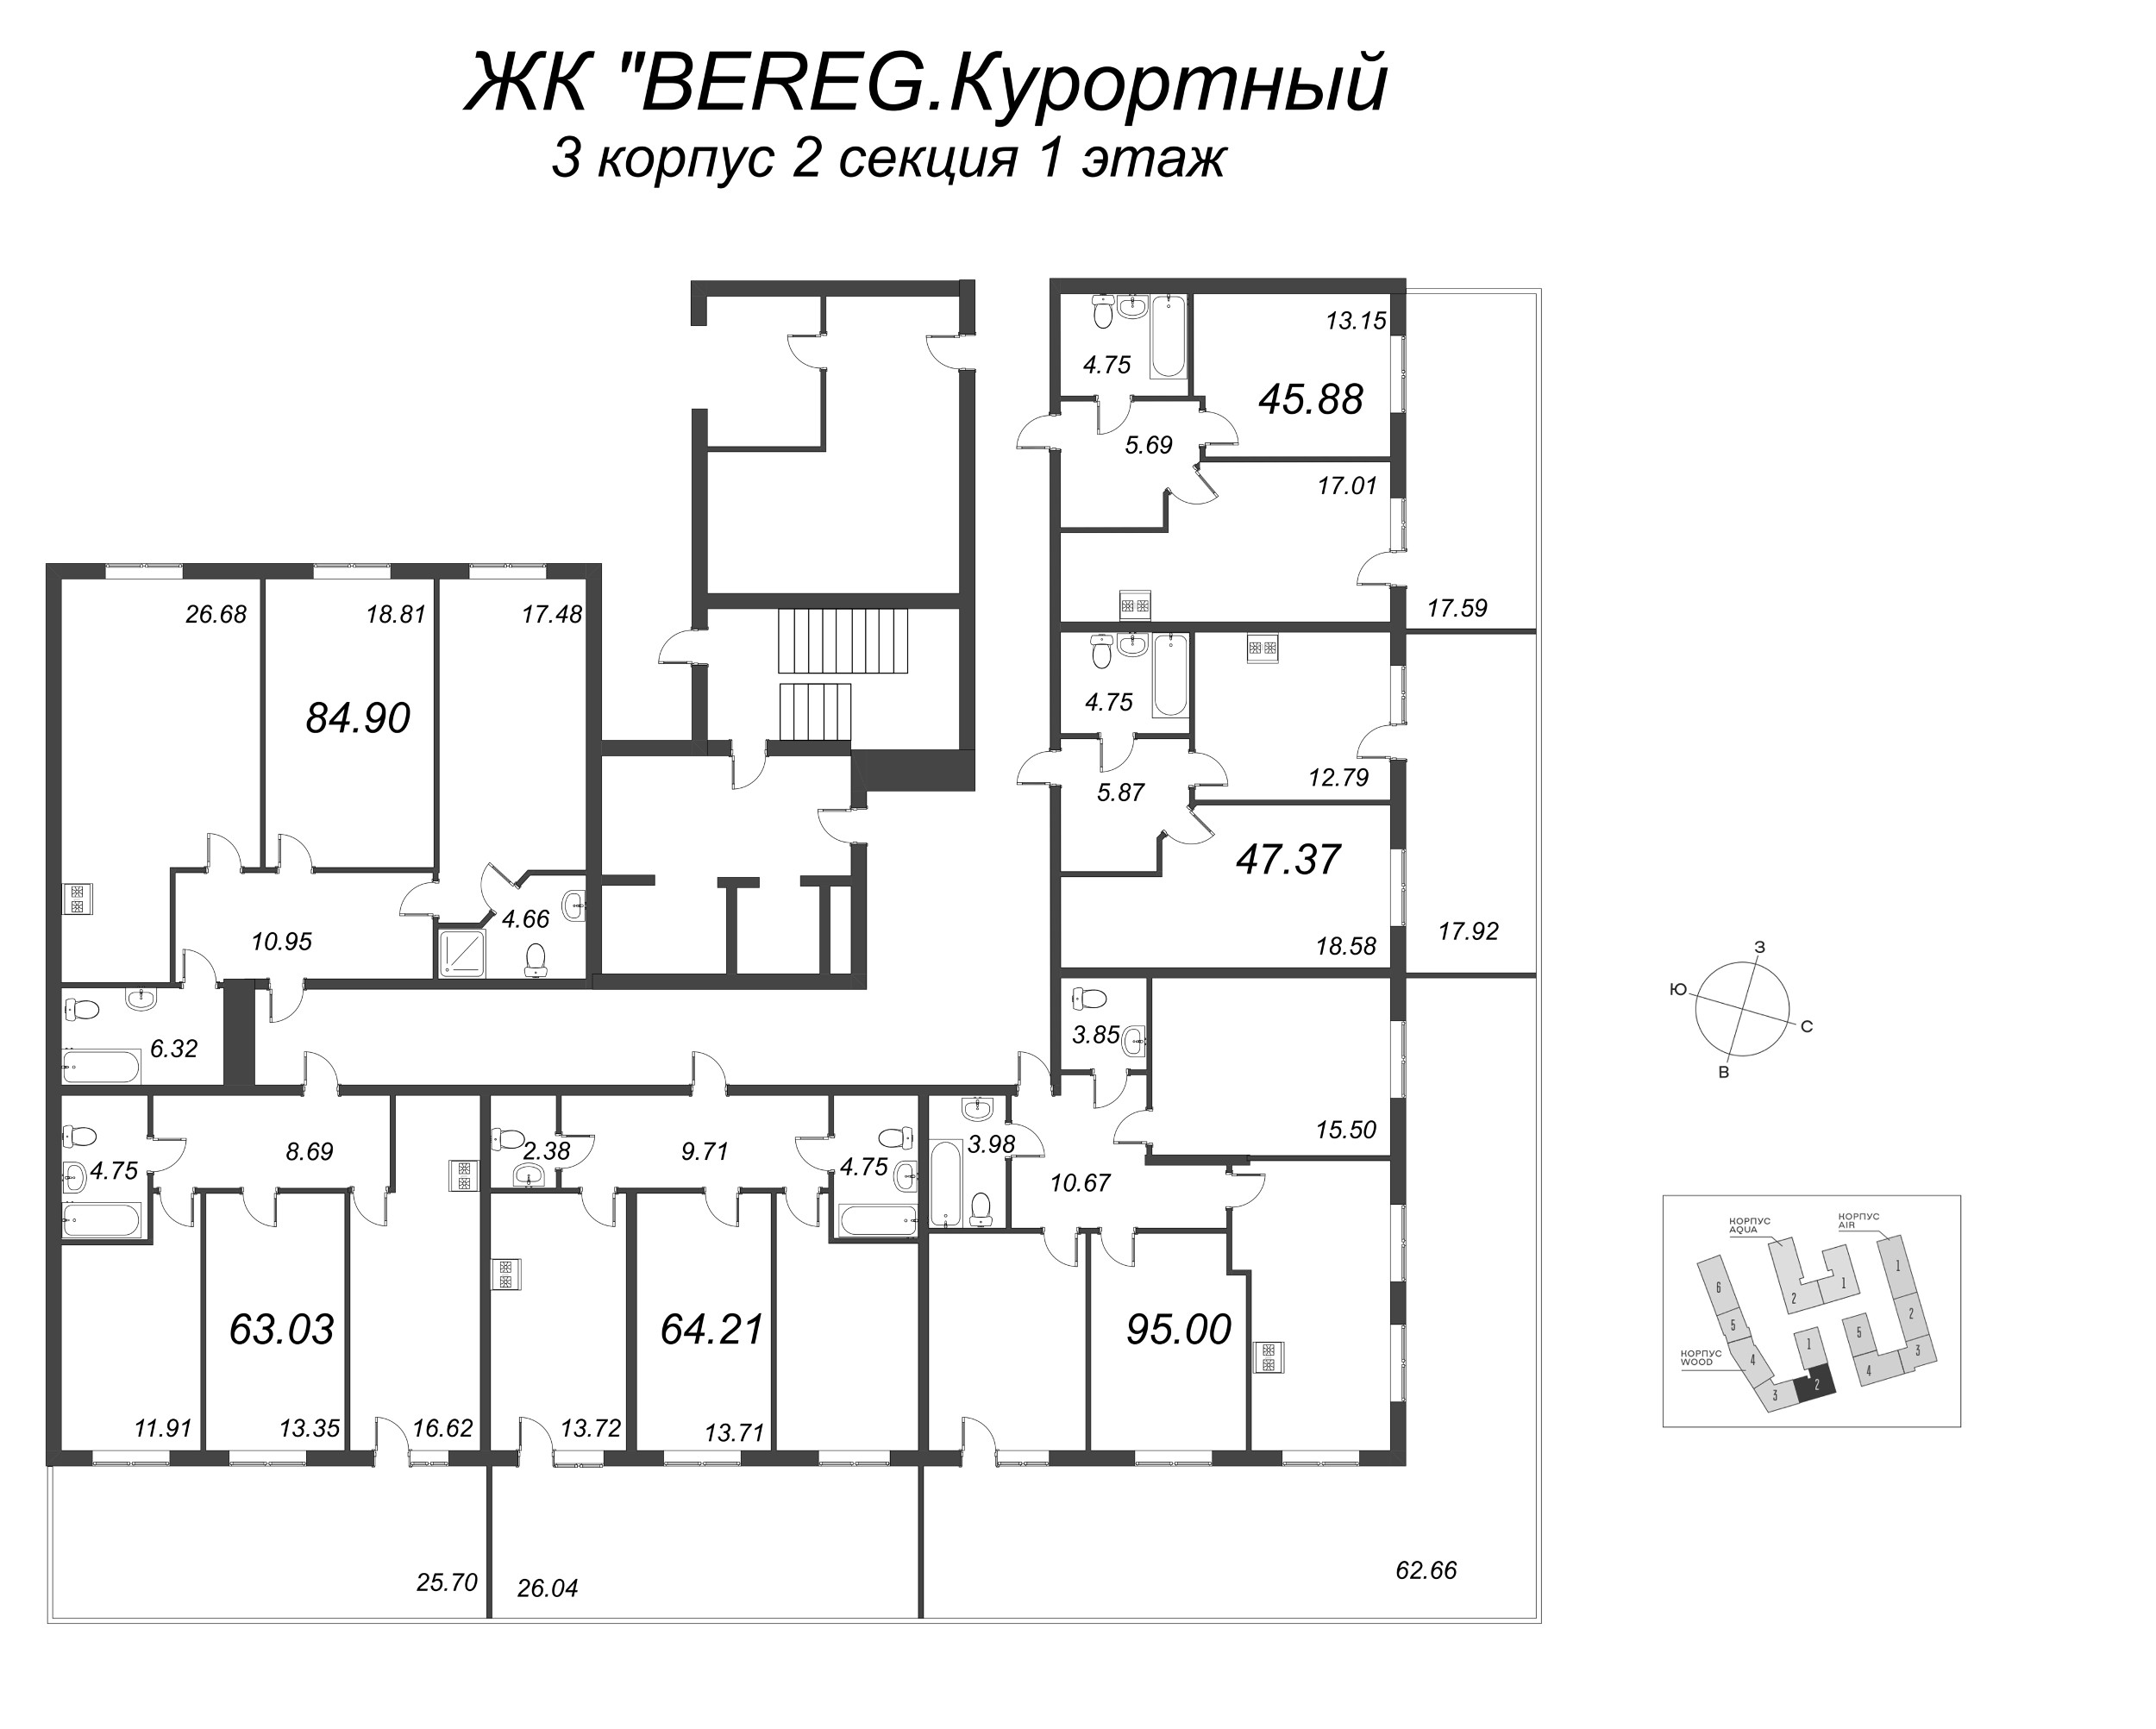 1-комнатная квартира, 47.37 м² в ЖК "Bereg. Курортный" - планировка этажа